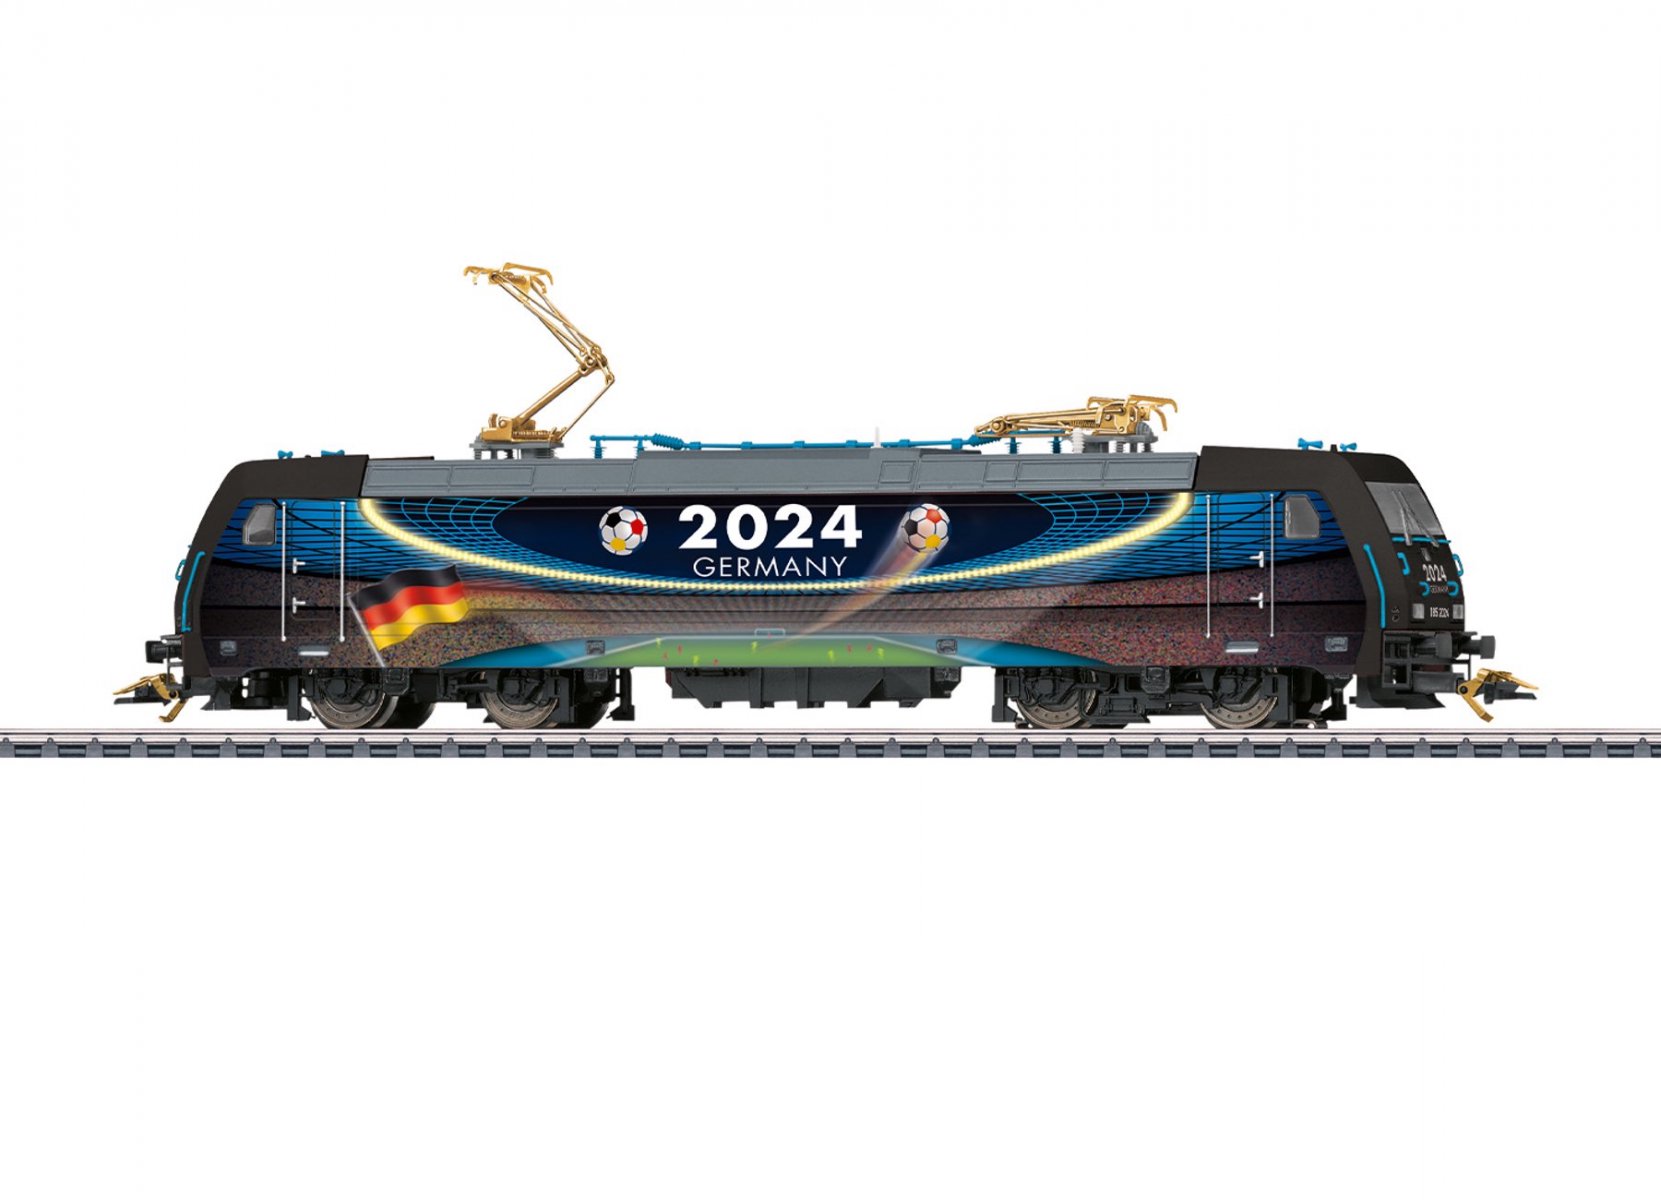 メルクリン(Marklin) HO Class 185.2 36649 | HOスケールのドイツ鉄道用電気機関車 -  欧米型鉄道模型専門店global-train|グローバルトレイン|